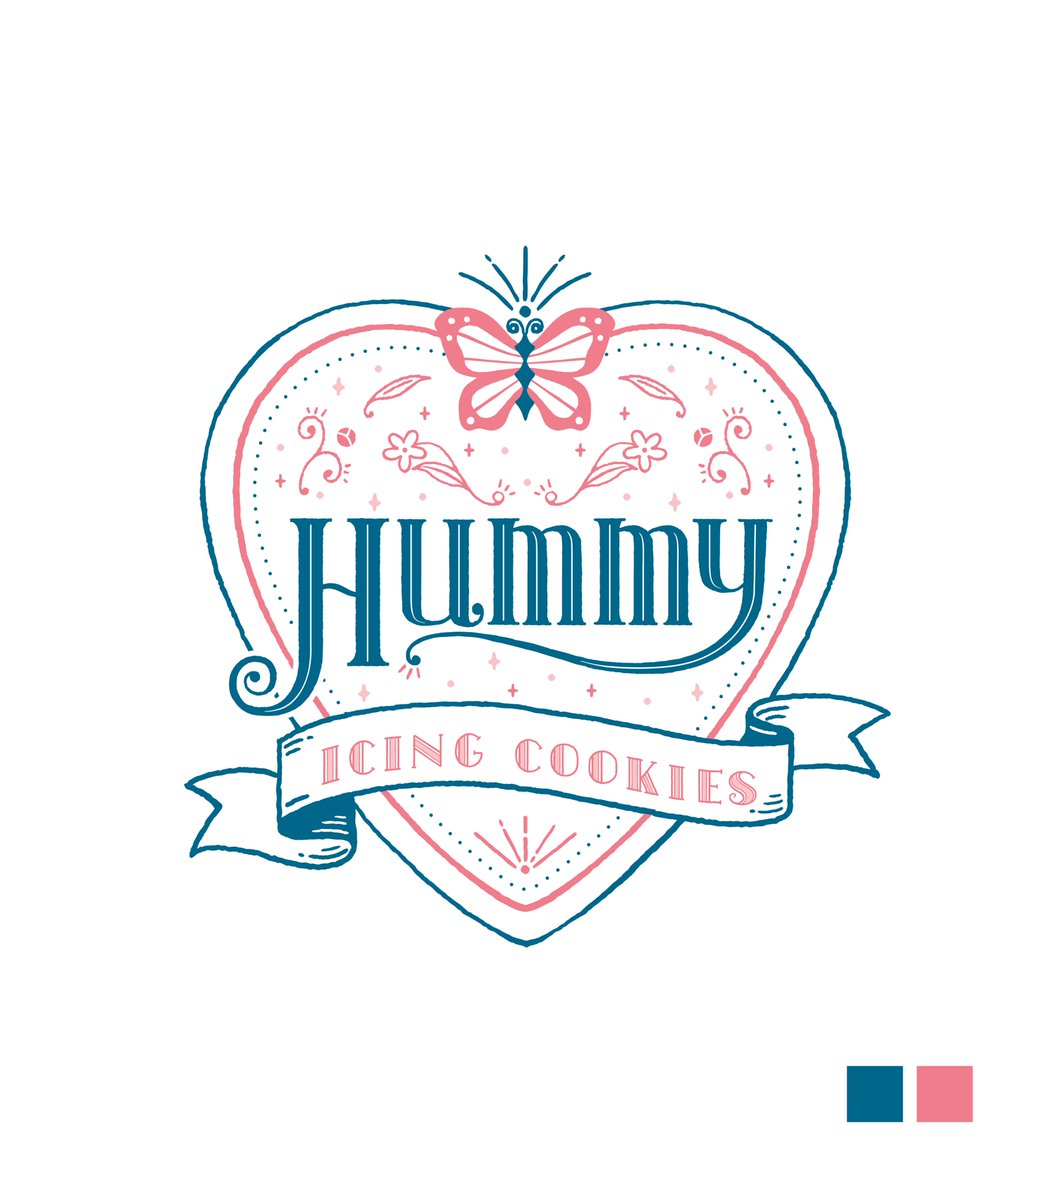 「【ショップロゴ制作】
素敵なアイシングクッキー屋さんHummy様 @HALMIh」|オビワン(ob1)のイラスト